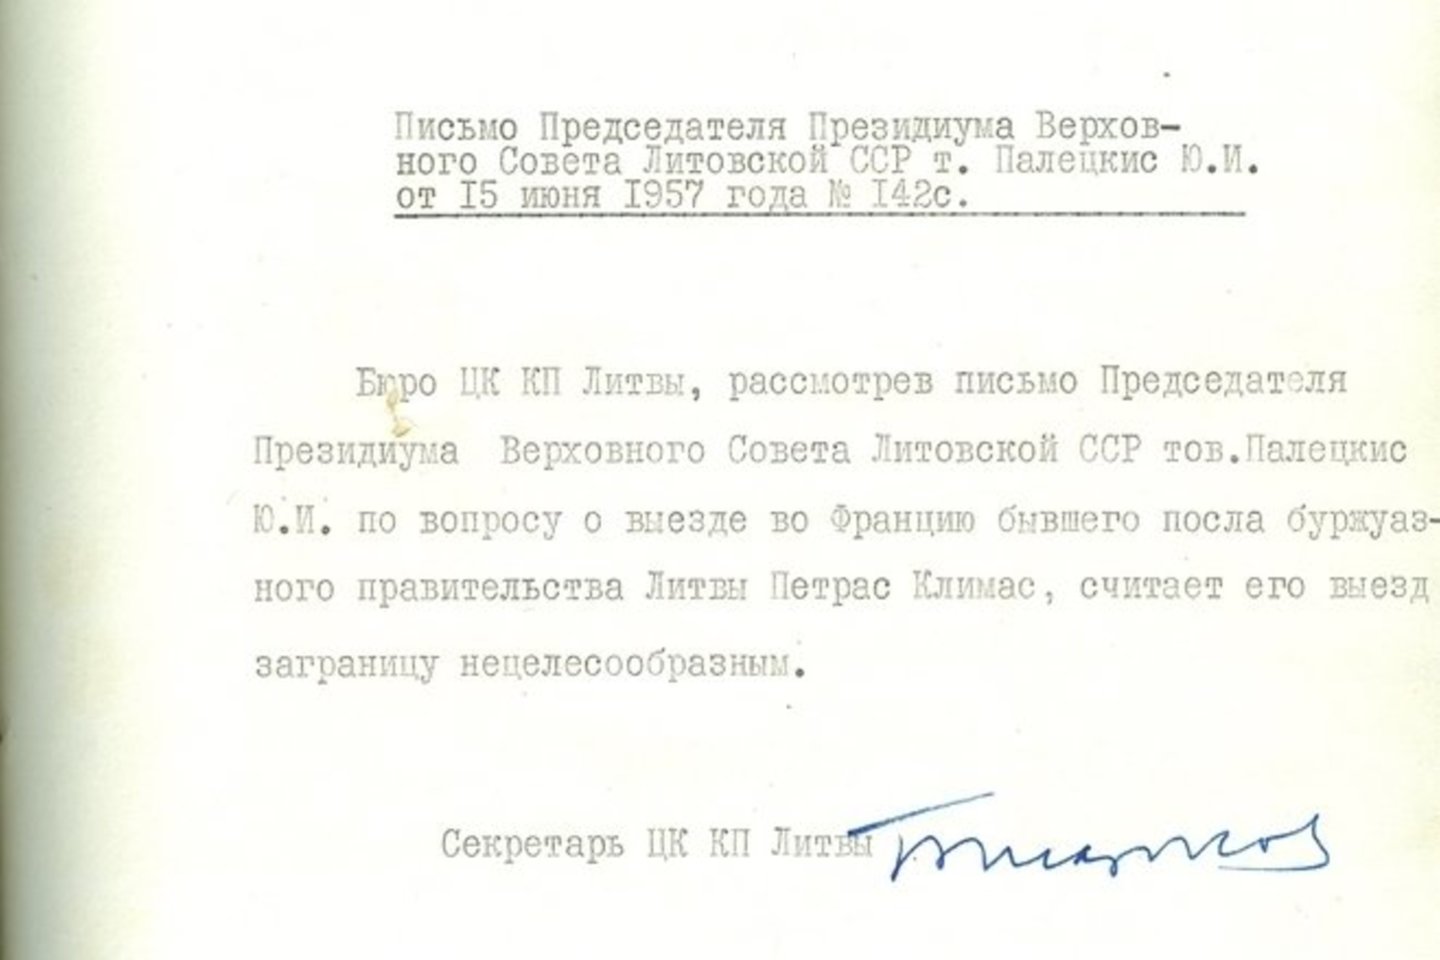  Lietuvos komunistų partijos centro komiteto biuro posėdžio nutarimas dėl draudimo Petrui Klimui išvykti į užsienį. 1957 m. liepos 22 d. Biuras, apsvarstęs Lietuvos SSR Aukščiausios Tarybos Prezidiumo pirmininko Justo Paleckio 1957 m. birželio 15 d. laišką ir atsižvelgęs į Valstybės saugumo komiteto (KGB) prie Lietuvos SSR Ministrų Tarybos 1957 m. liepos 18 d. rašte pateiktą informaciją, nutarė P. Klimo išvykimą į užsienį laikyti netikslingu.<br> Lietuvos ypatingojo archyvo nuotr.